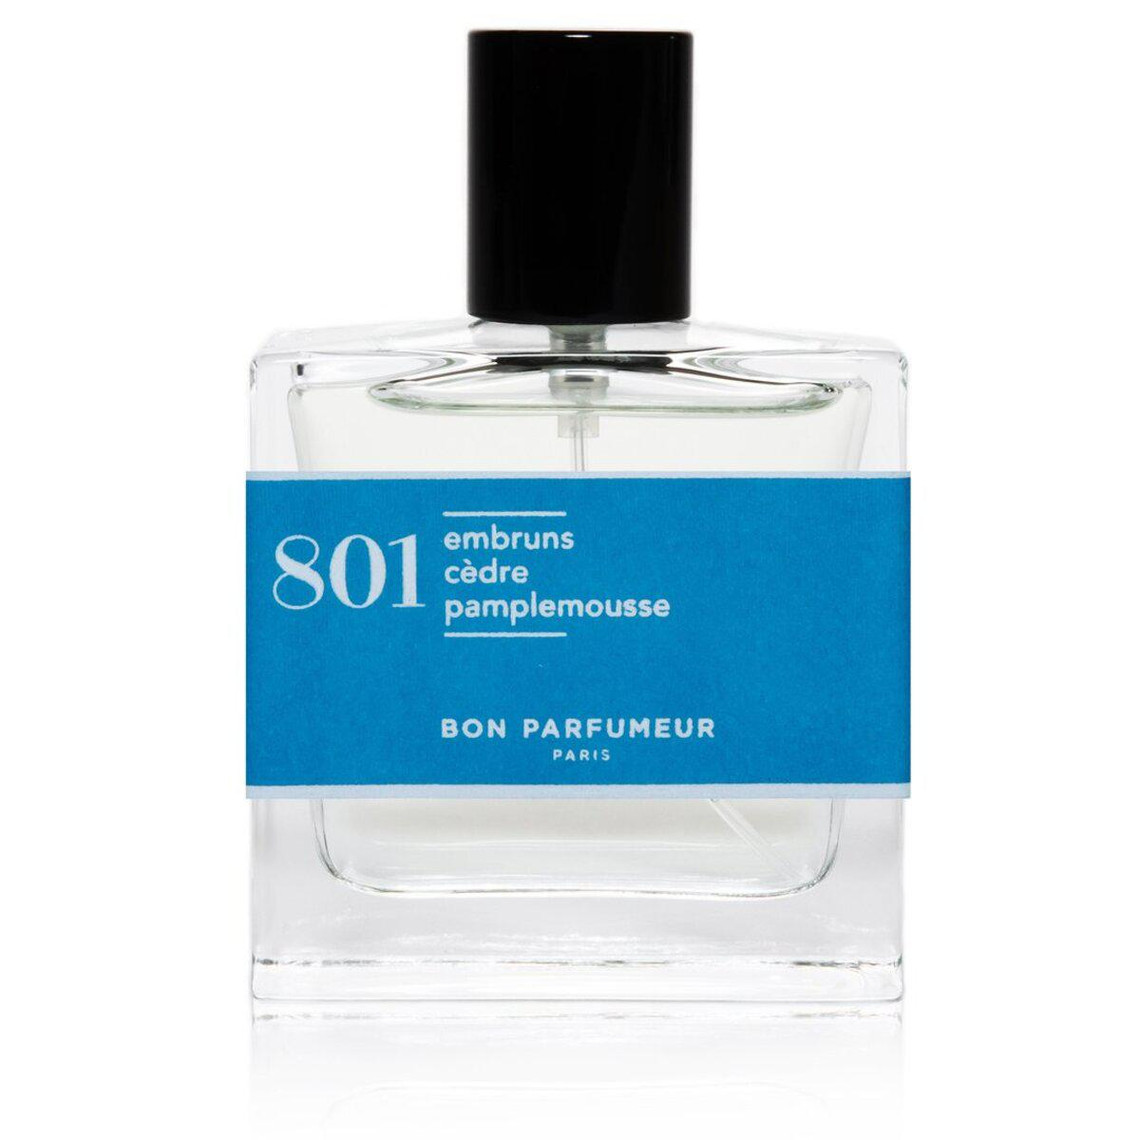 N°801 Embruns Cèdre Pamplemousse Eau de Parfum